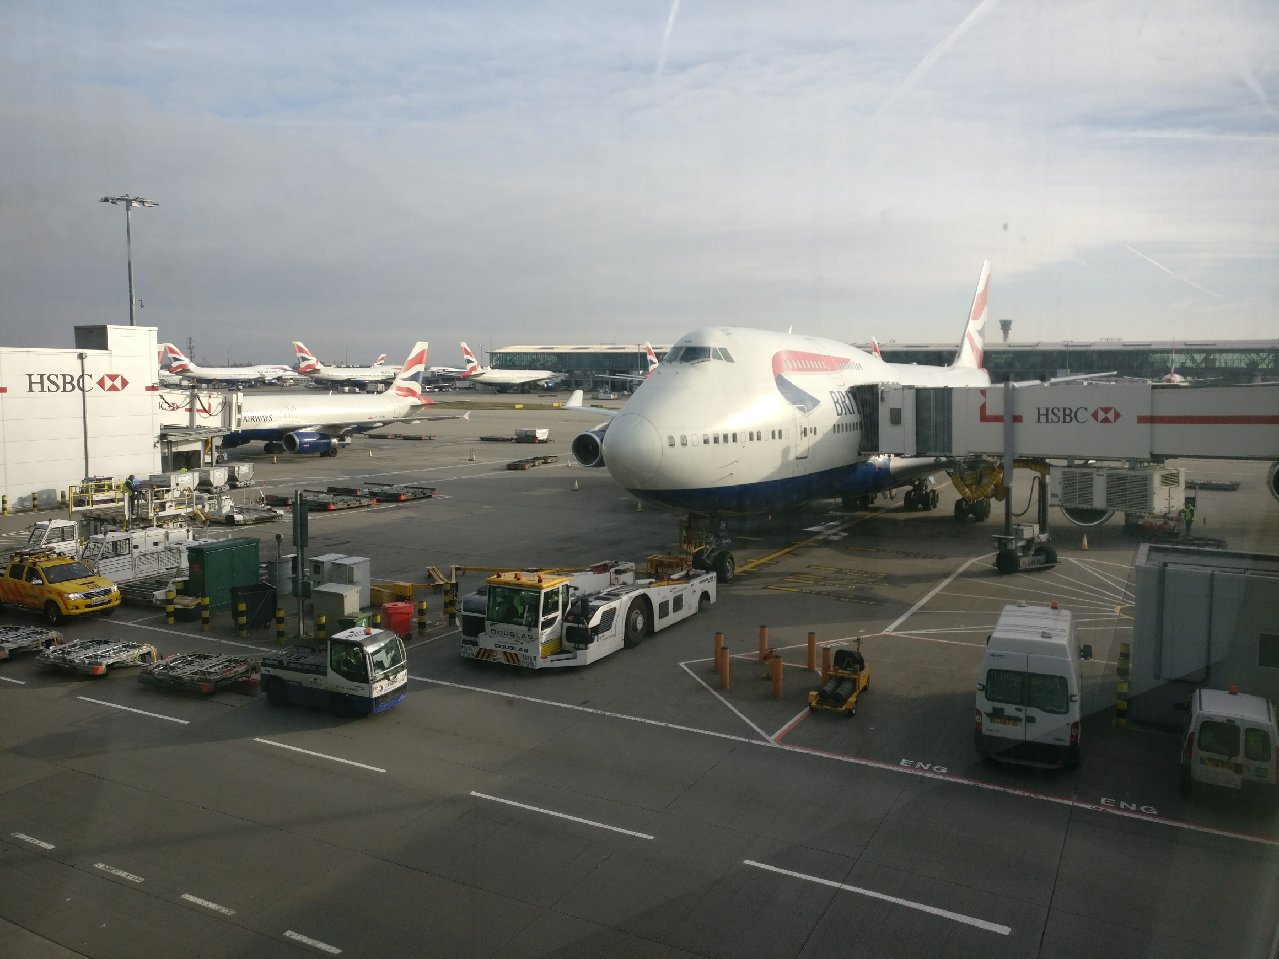 world traveller british airways review